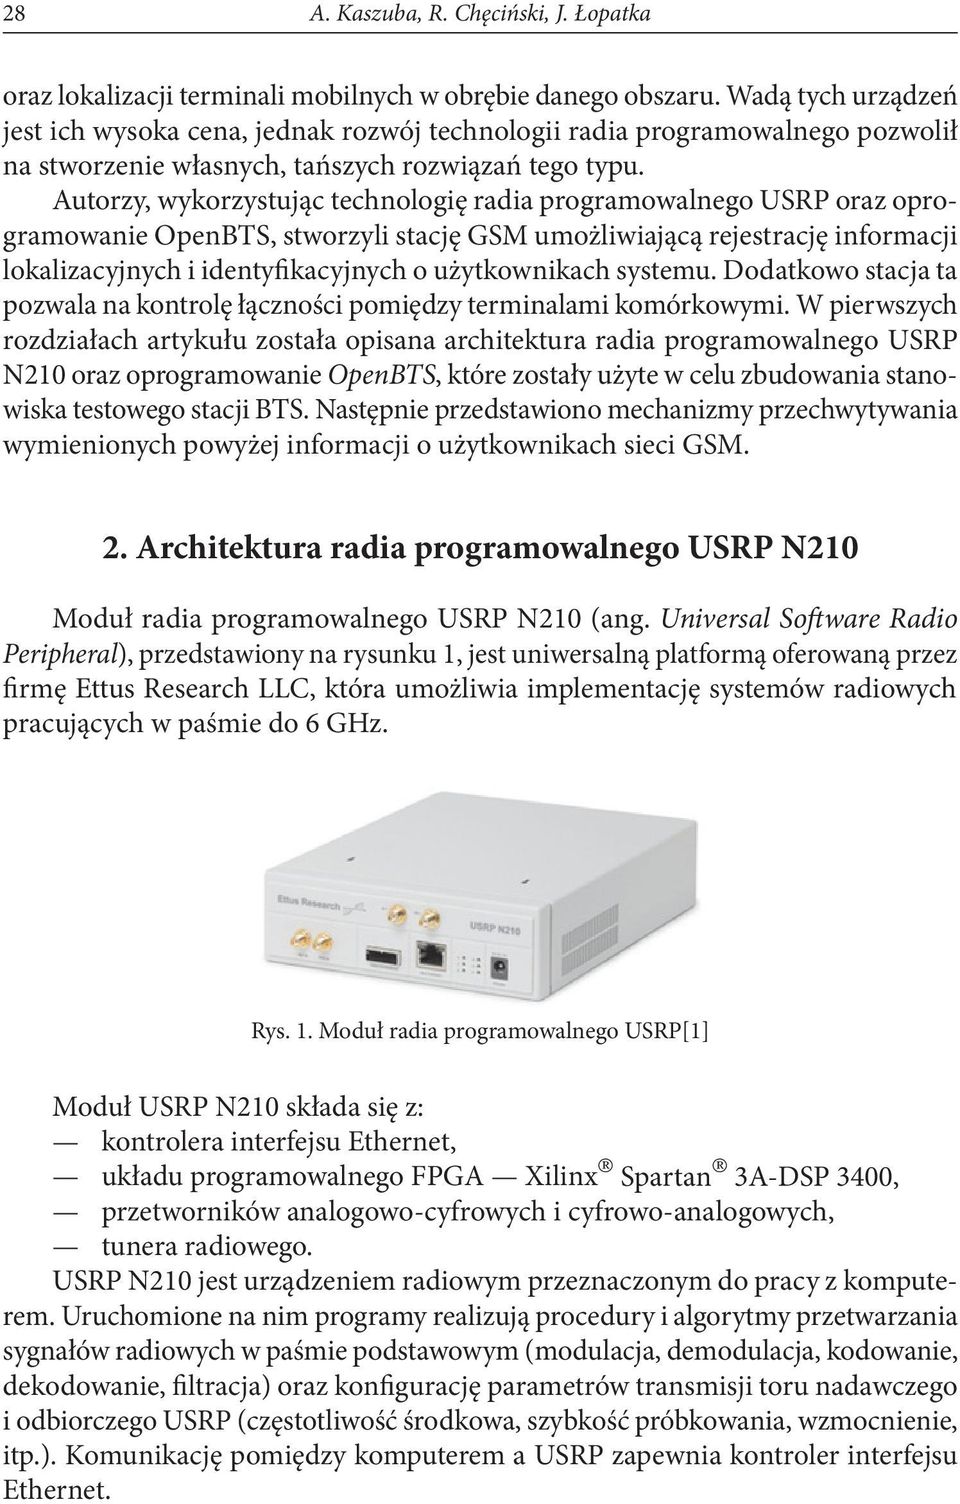 Autorzy, wykorzystując technologię radia programowalnego USRP oraz oprogramowanie OpenBTS, stworzyli stację GSM umożliwiającą rejestrację informacji lokalizacyjnych i identyfikacyjnych o